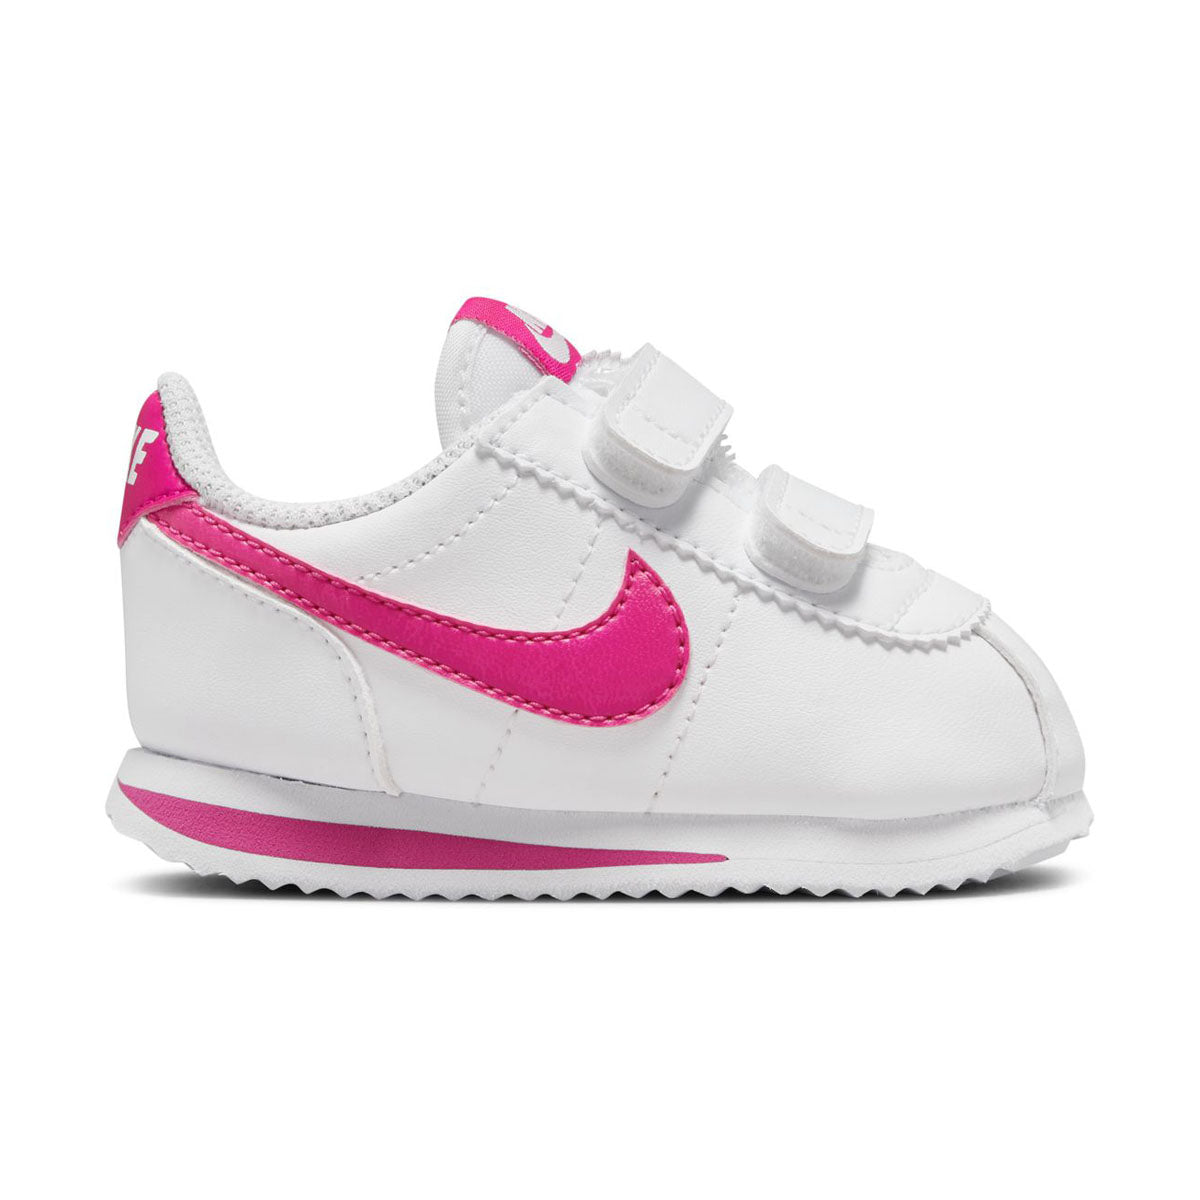 Nike Cortez Basic Baby/Toddler Shoes